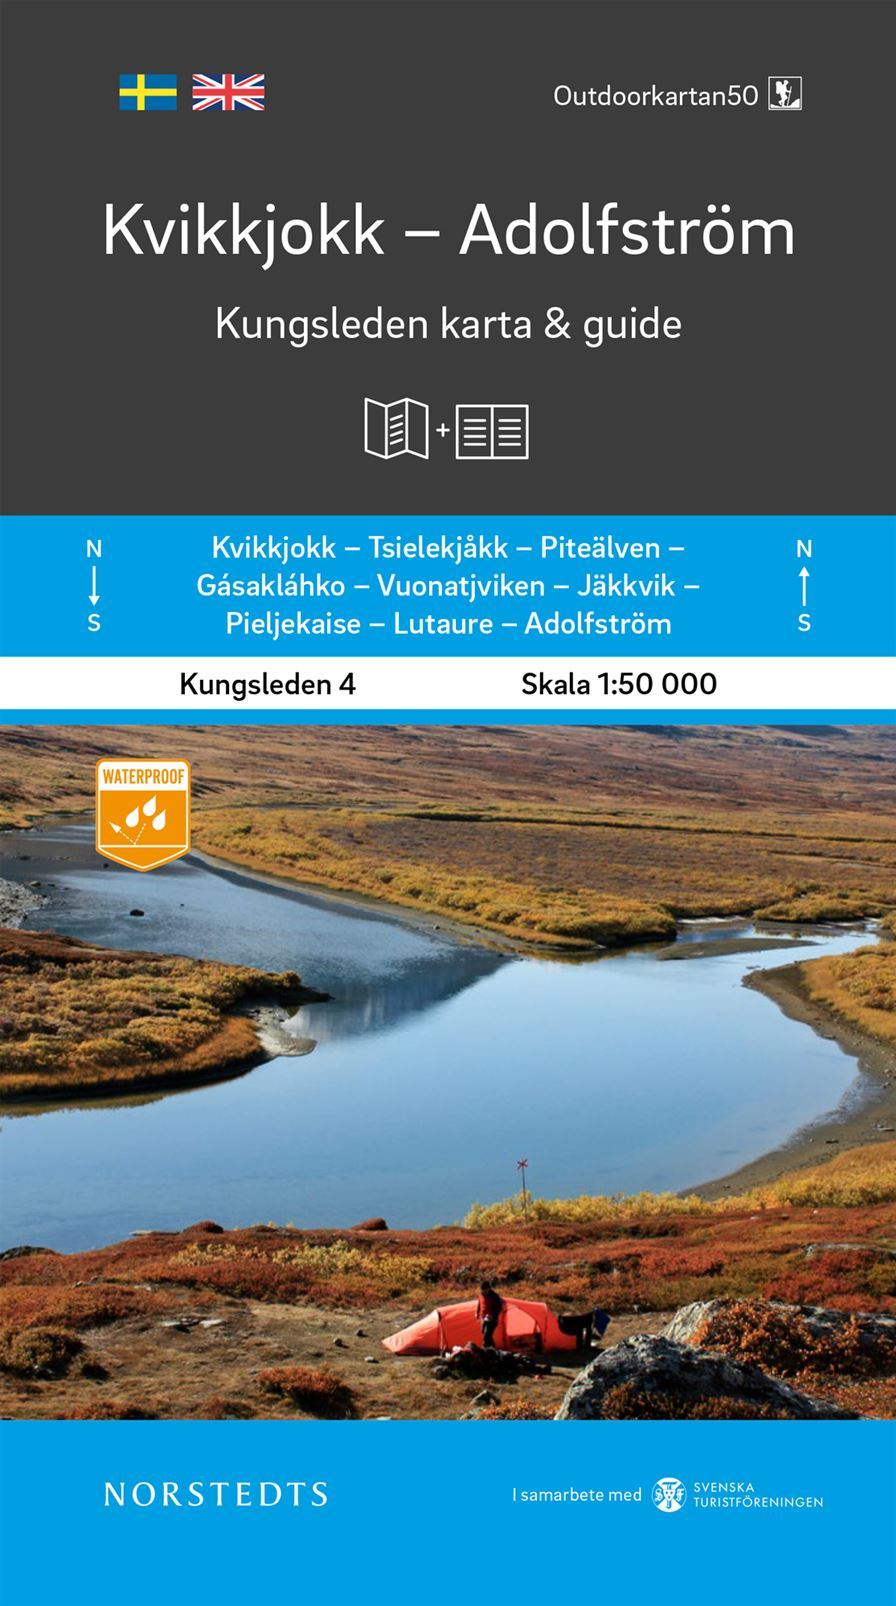 Carte & guide du Kungsleden n° 4 - Kvikkjokk - Adolfström (Suède) | Norstedts carte pliée Norstedts 